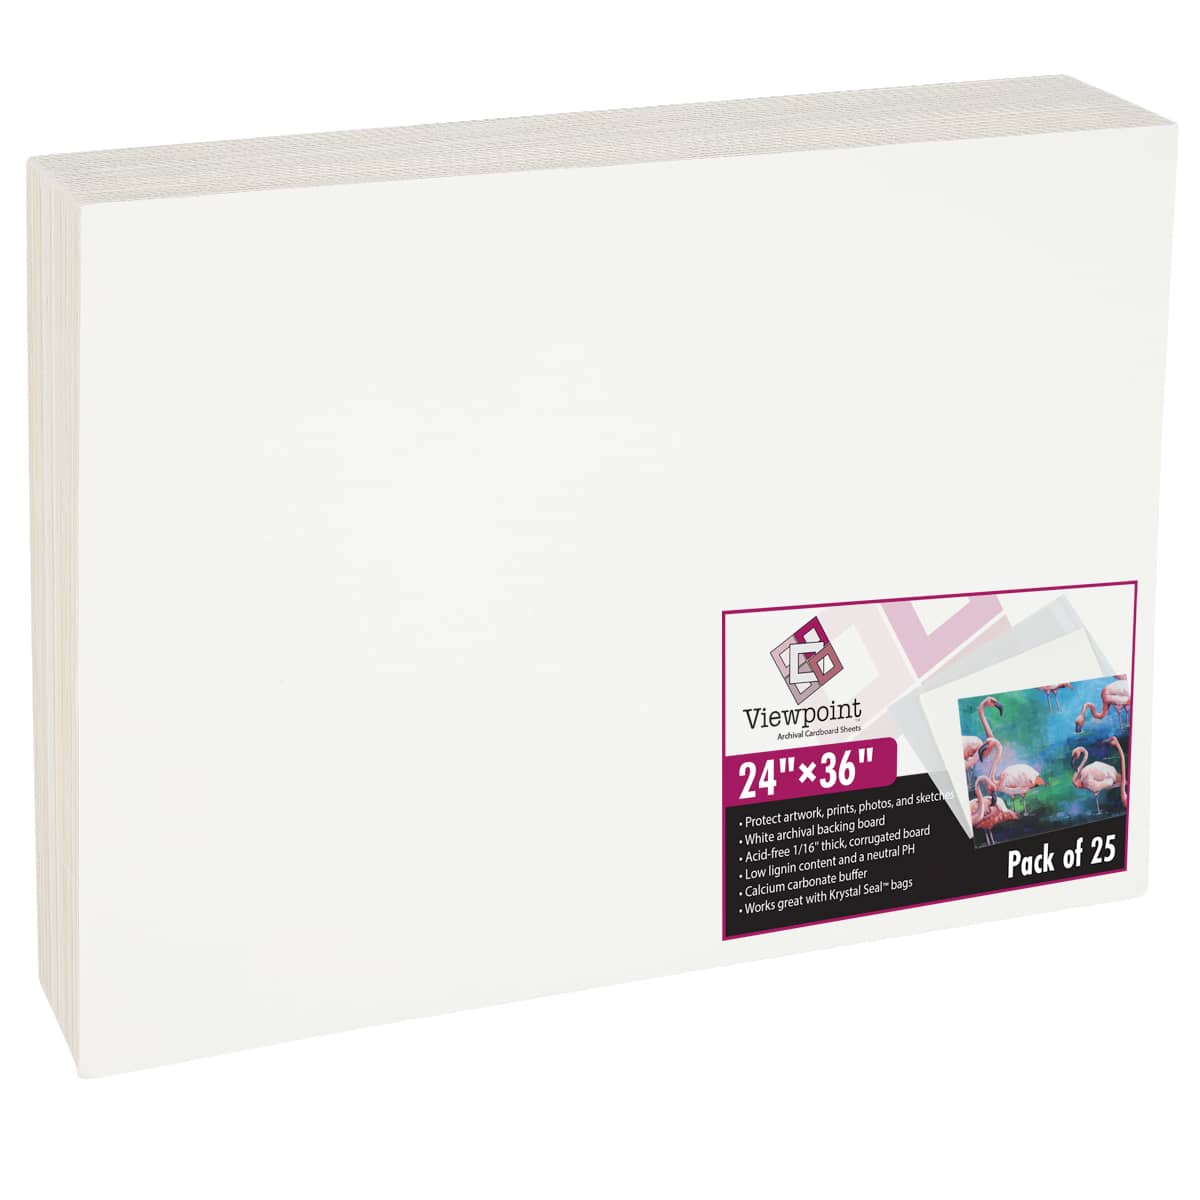 Foamcore 3/16 White 24 X 36 - Du-All Art & Drafting Supply